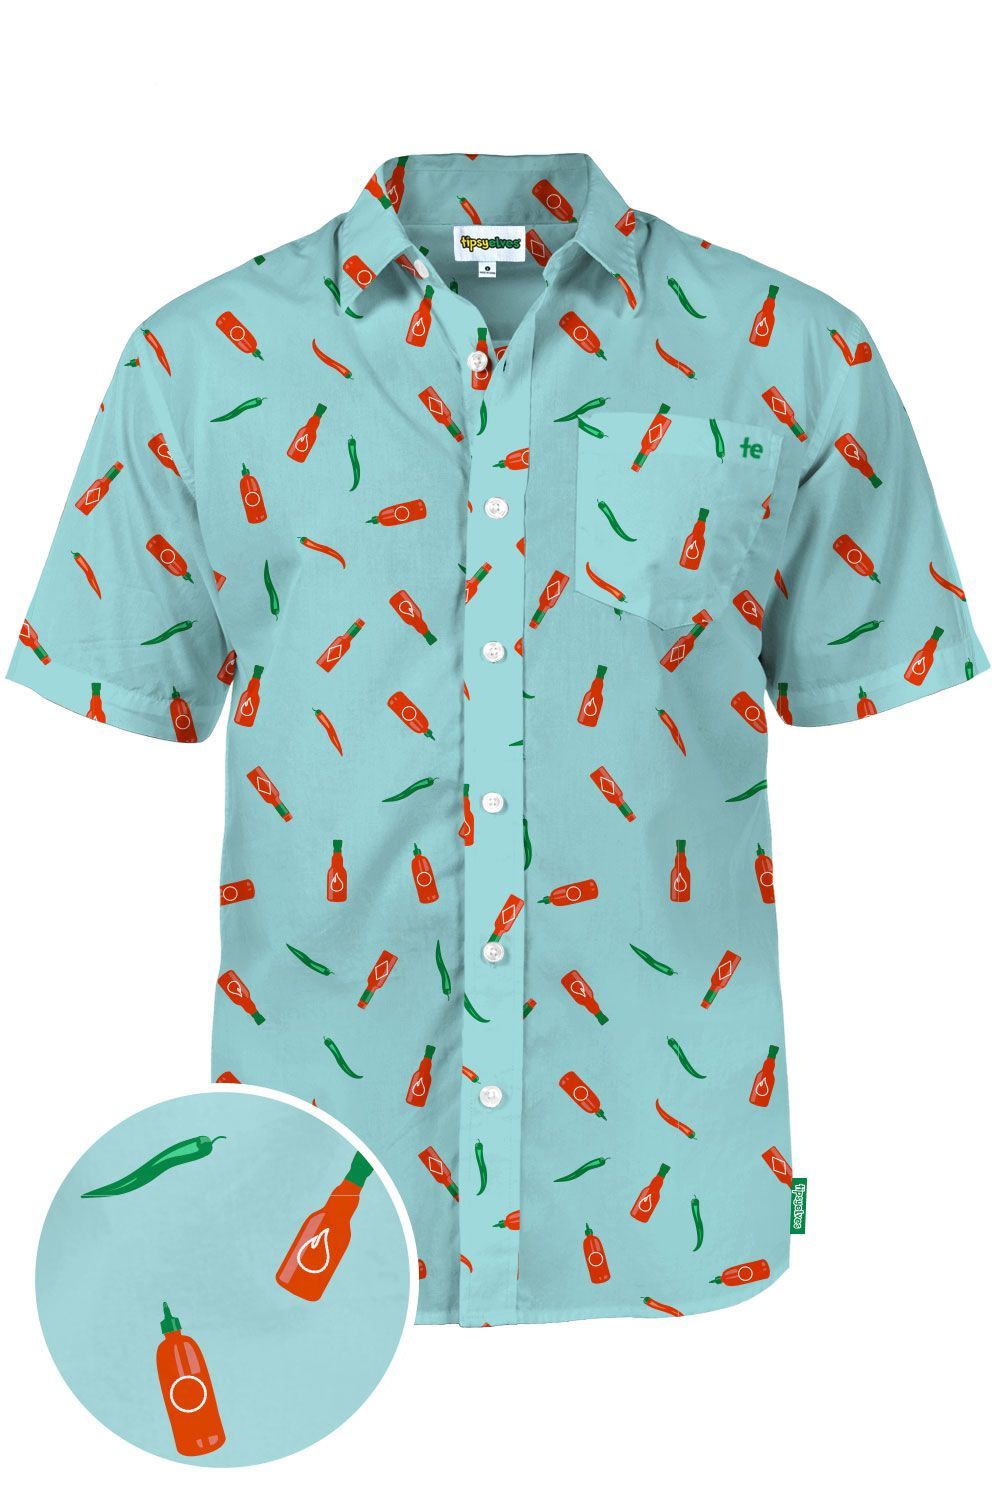 Hot Sauce Blue Unique Design Hawaiian Shirt